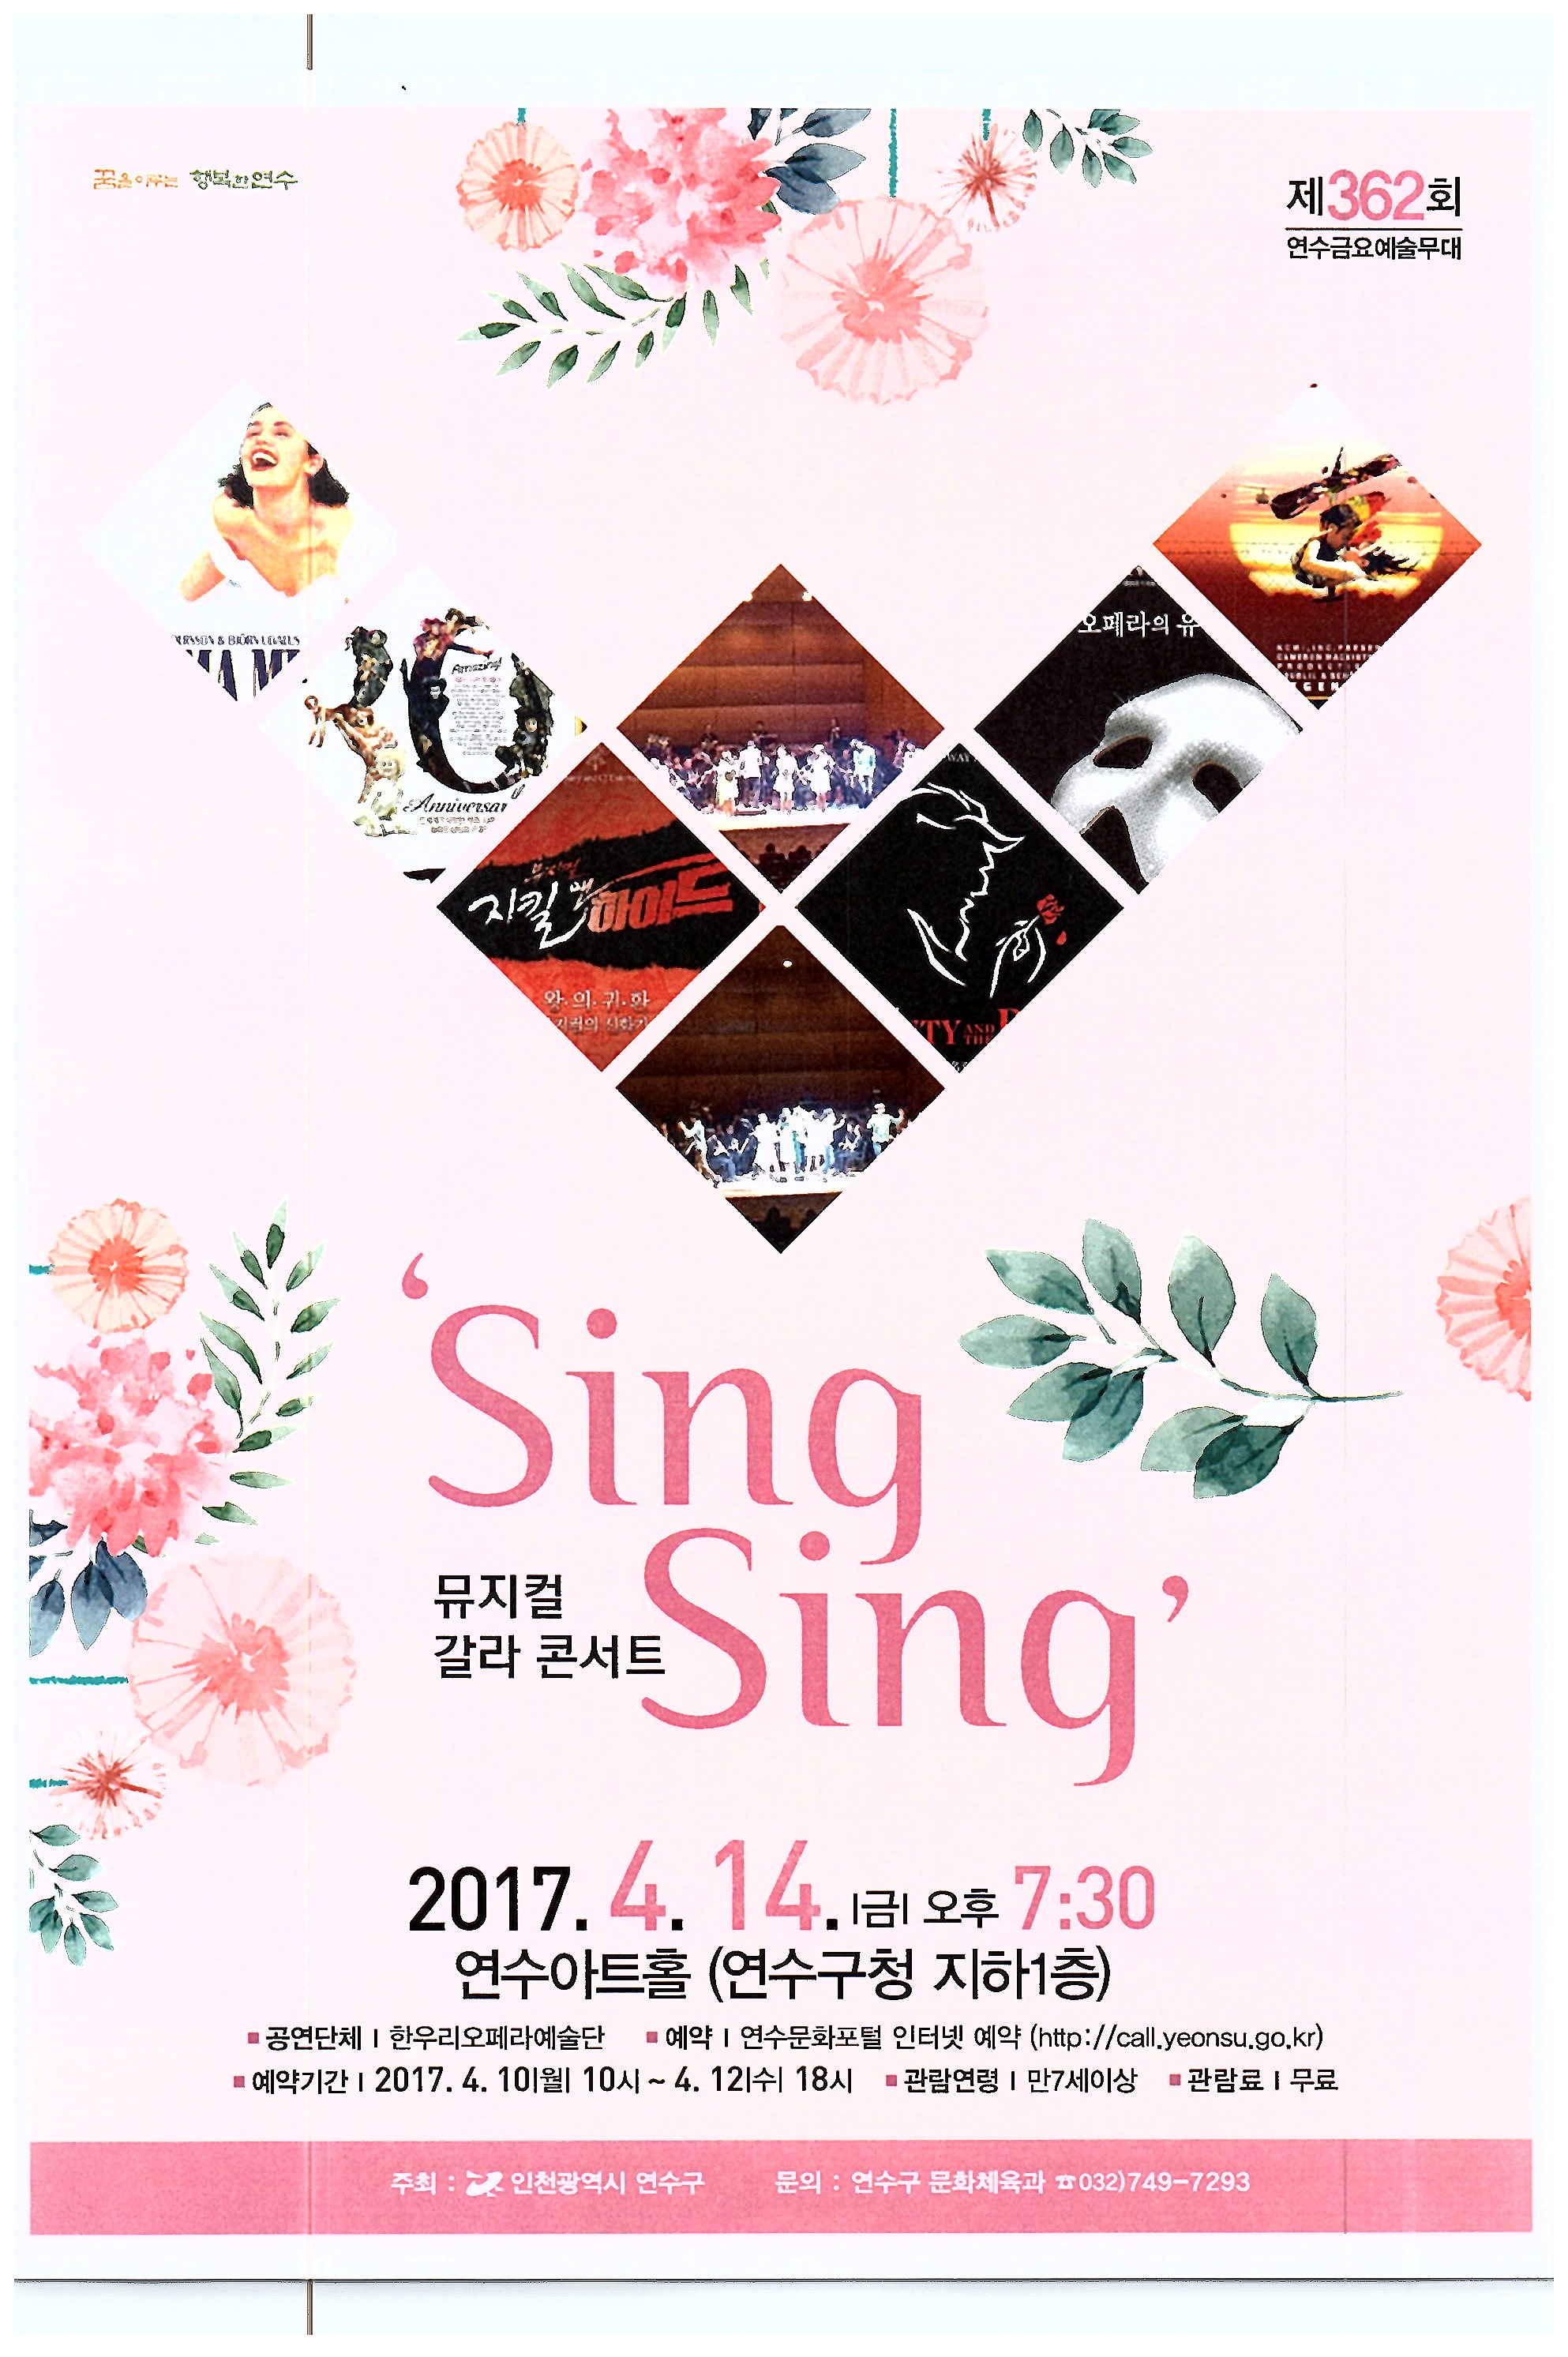 뮤지컬 갈라 콘서트 ‘Sing Sing’ 공연포스터 - 자세한 내용은 상세보기의 공연소개를 참고해주세요.